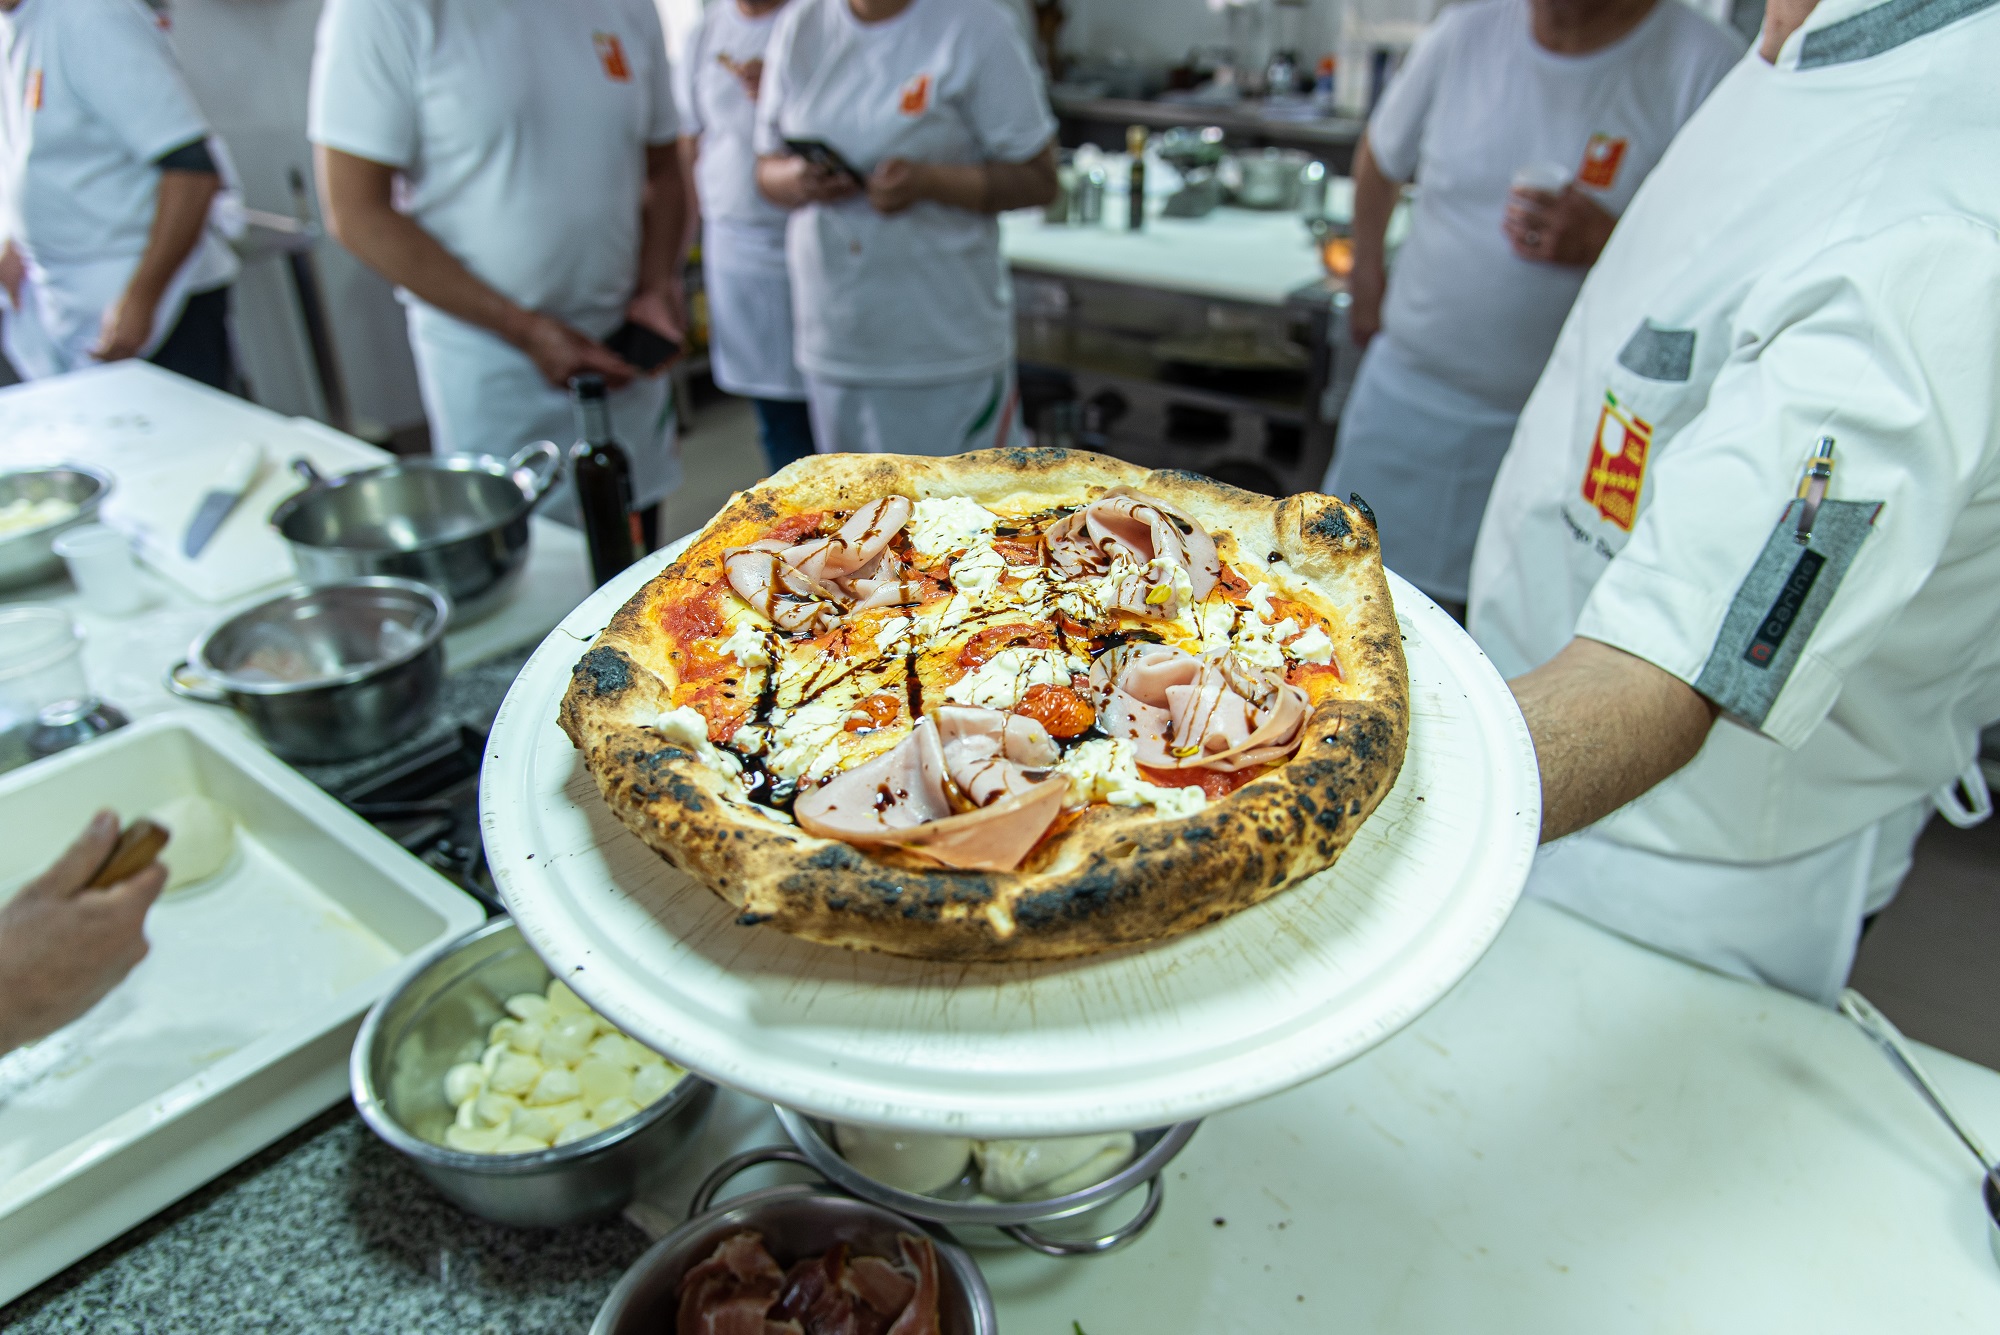 capacitacion-salta-sindicato-pasteleros-curso-pizzas-apyce-asociacion-pizzerias-casas-empanadas-argentina